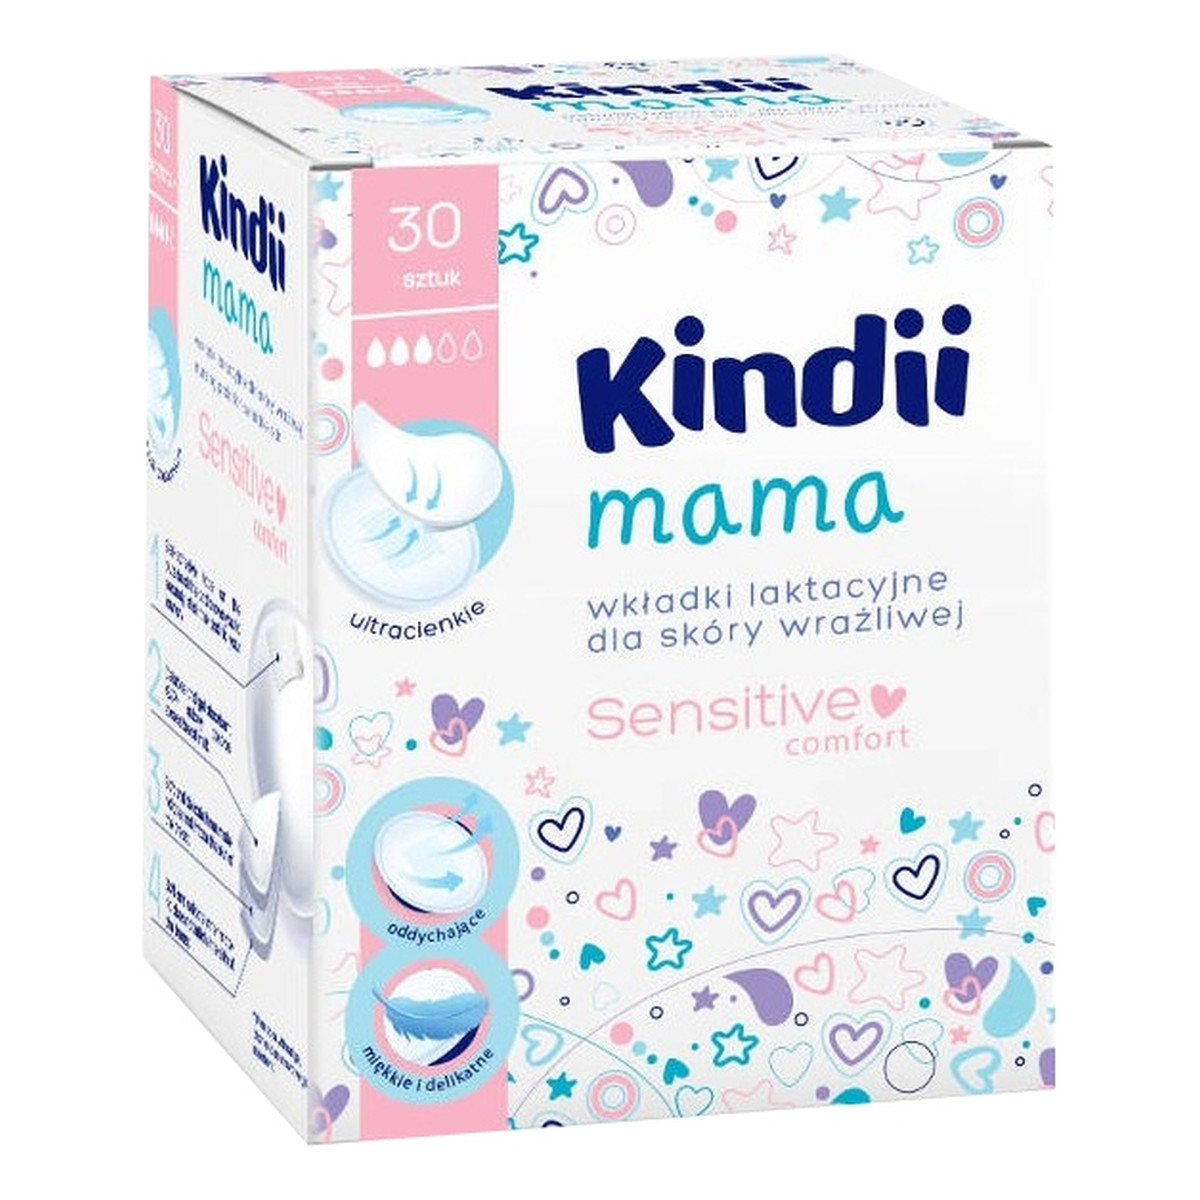 Kindii Mama wkładki laktacyjne dla skóry wrażliwej Sensitive Comfort 30szt.